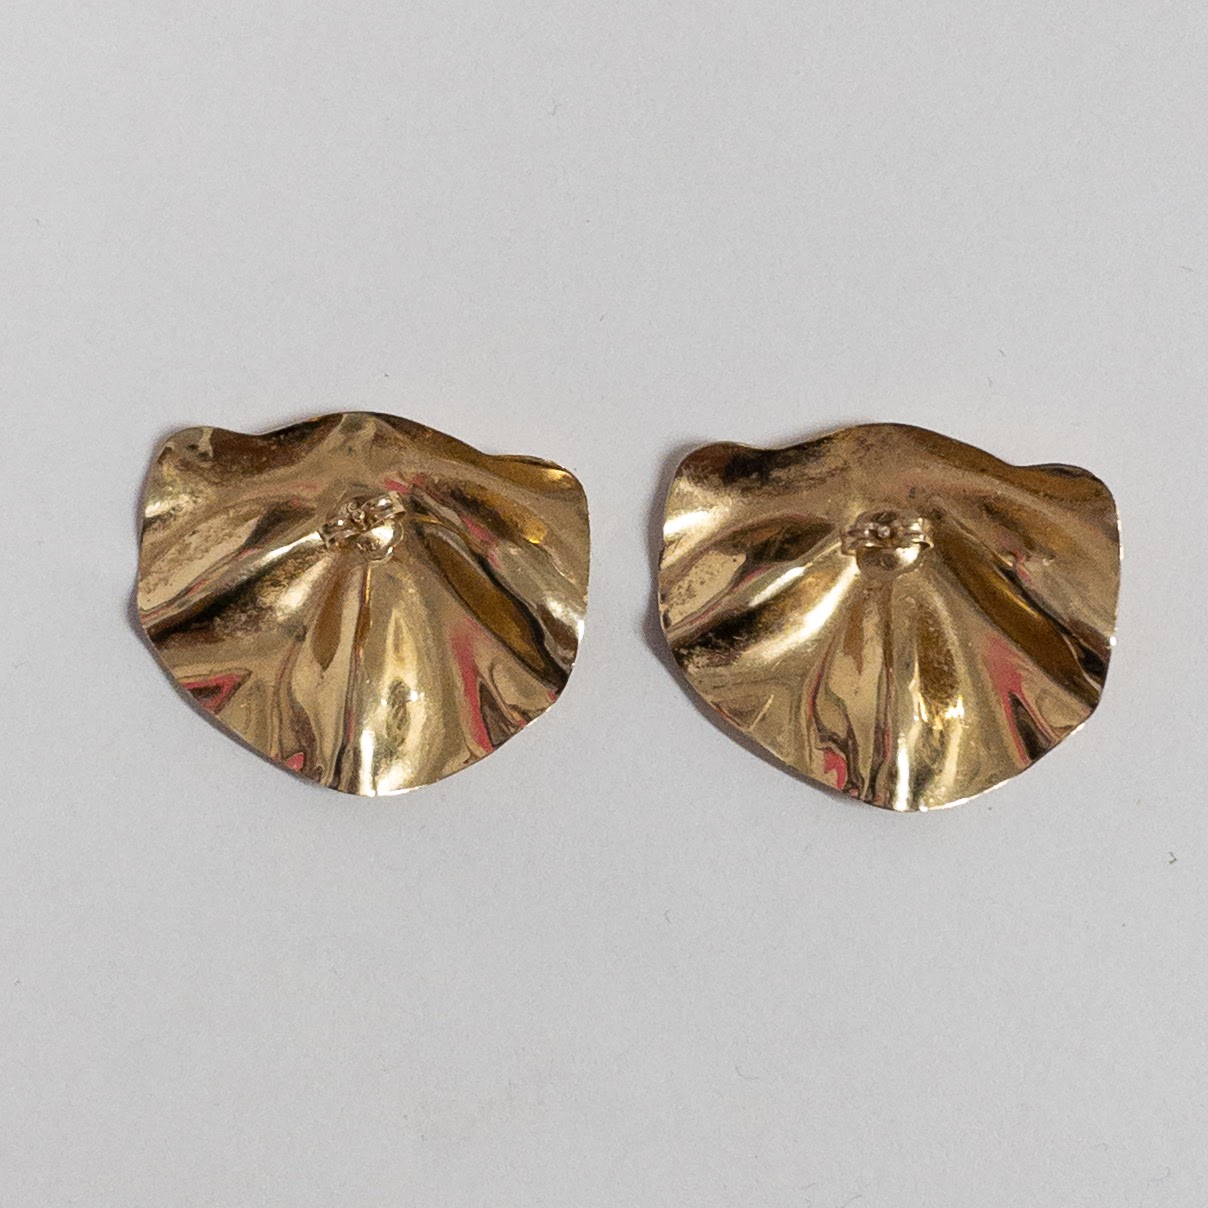 14K Gold Leaf Earrings